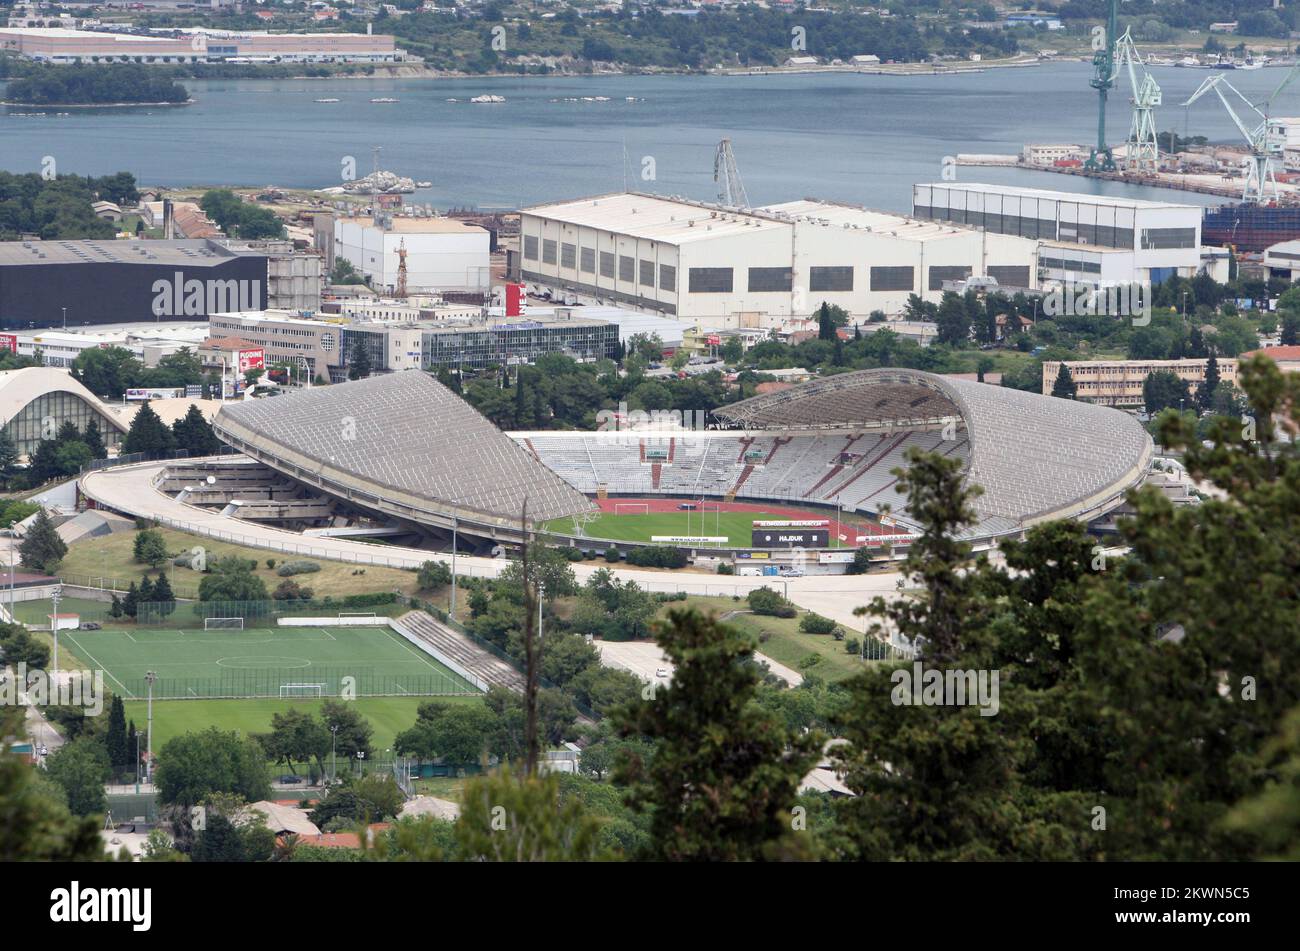 Almost HRK 150 million Needed for Poljud Stadium Renovation - Total Croatia